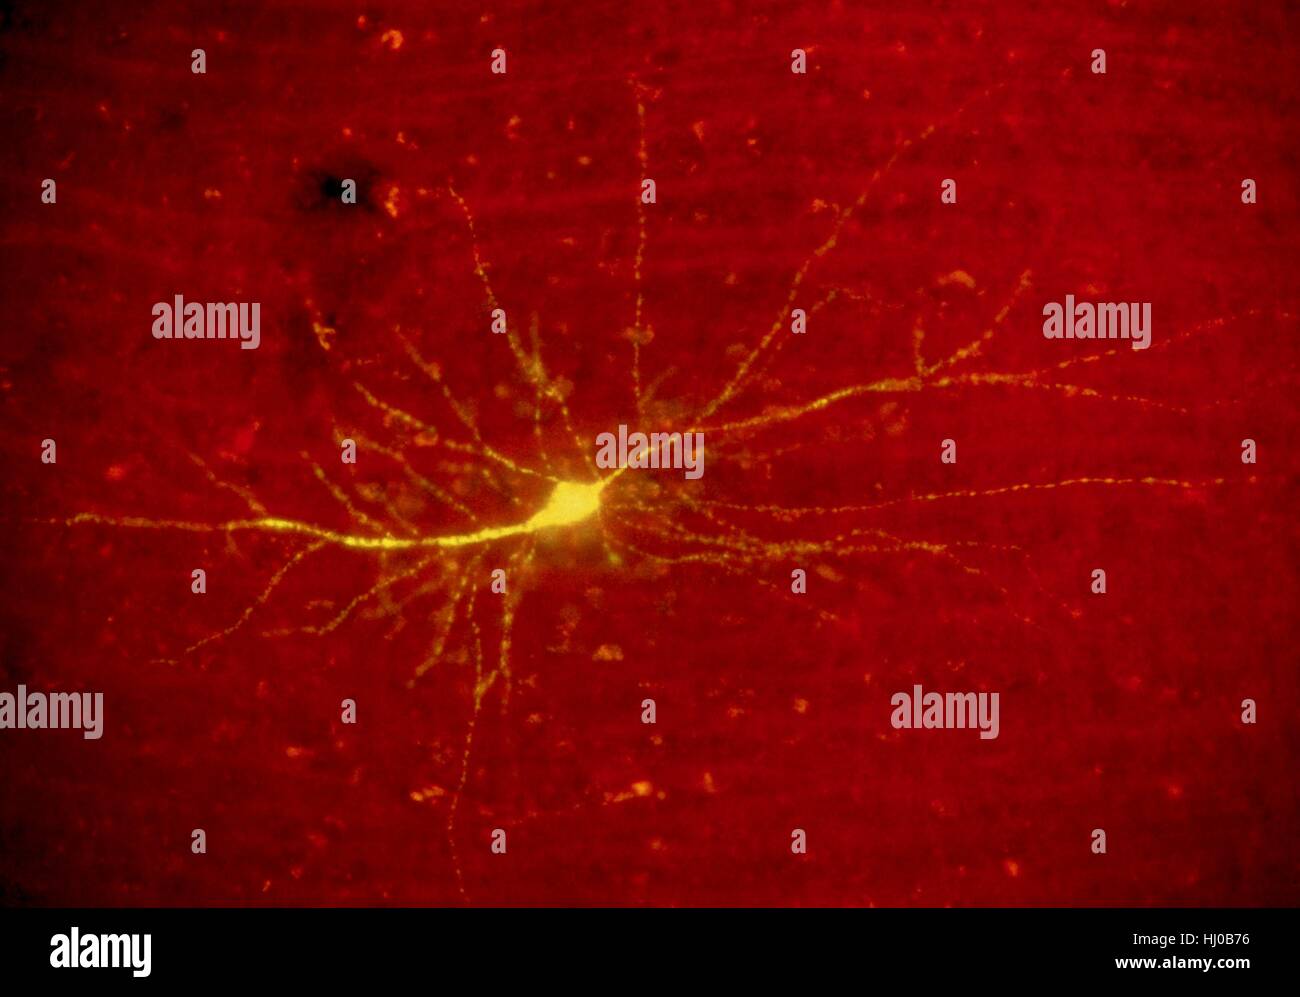 La lumière de fluorescence de micrographie neurone stellaire cortex humain.Ce neurone stellaire a été souillé du colorant fluorescent jaune Lucifer.Le cortex cérébral est la couche de tissu nerveux qui est à l'extérieur du cervelet cerveau cerveau des mammifères.C'est ce qu'on appelle la matière grise du cerveau en raison de fibres nerveuses qui Banque D'Images